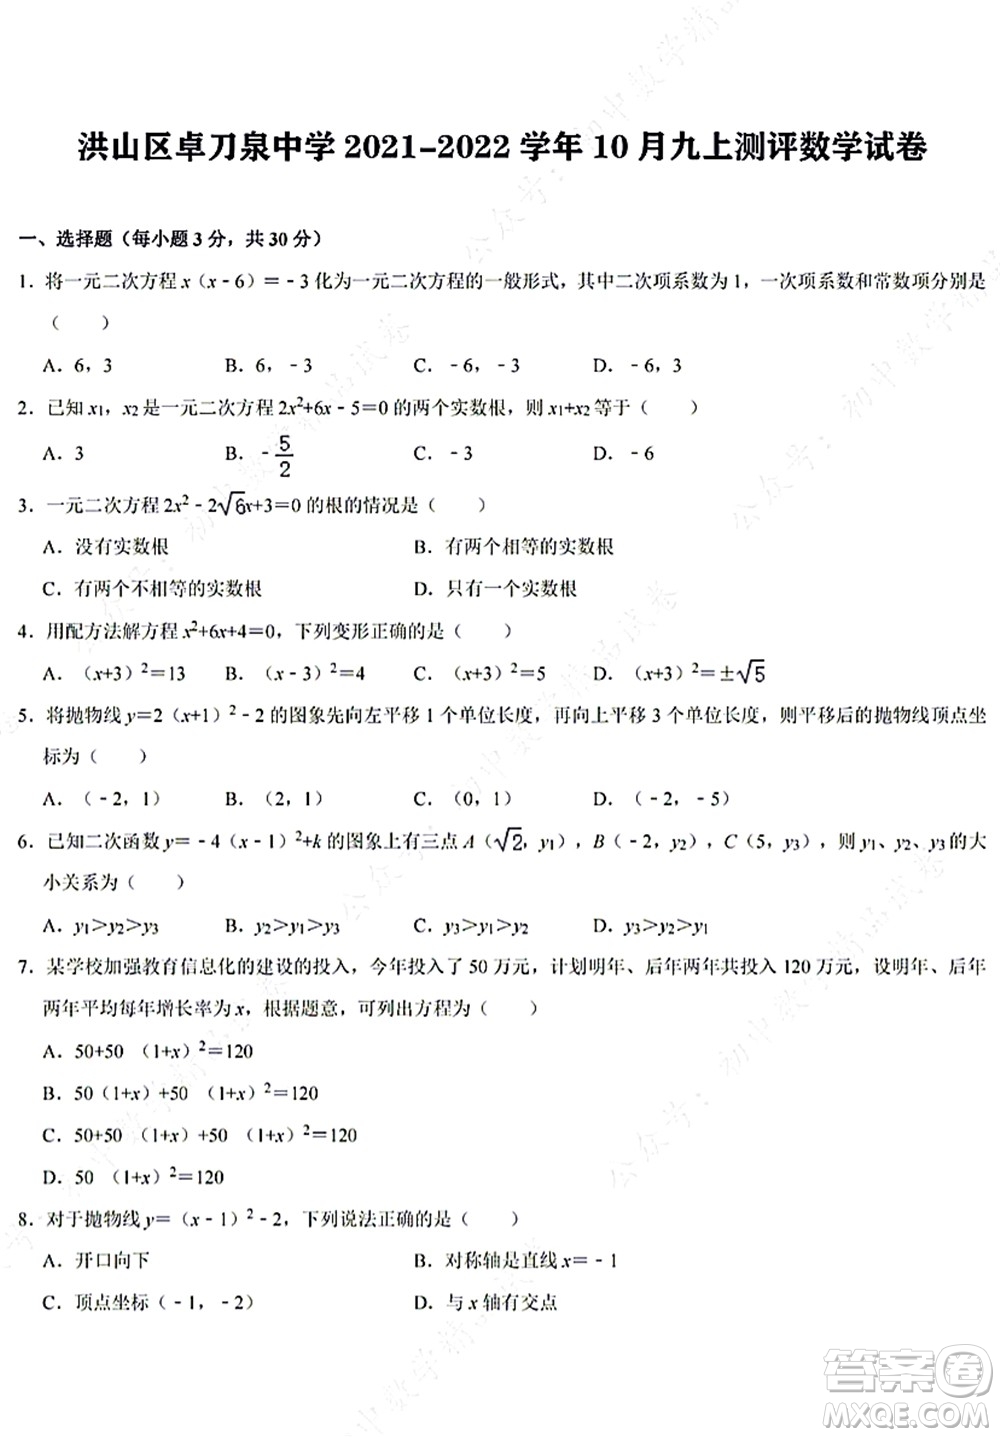 武汉洪山区卓刀泉中学2021-2022学年10月九年级上册测评数学试卷及答案